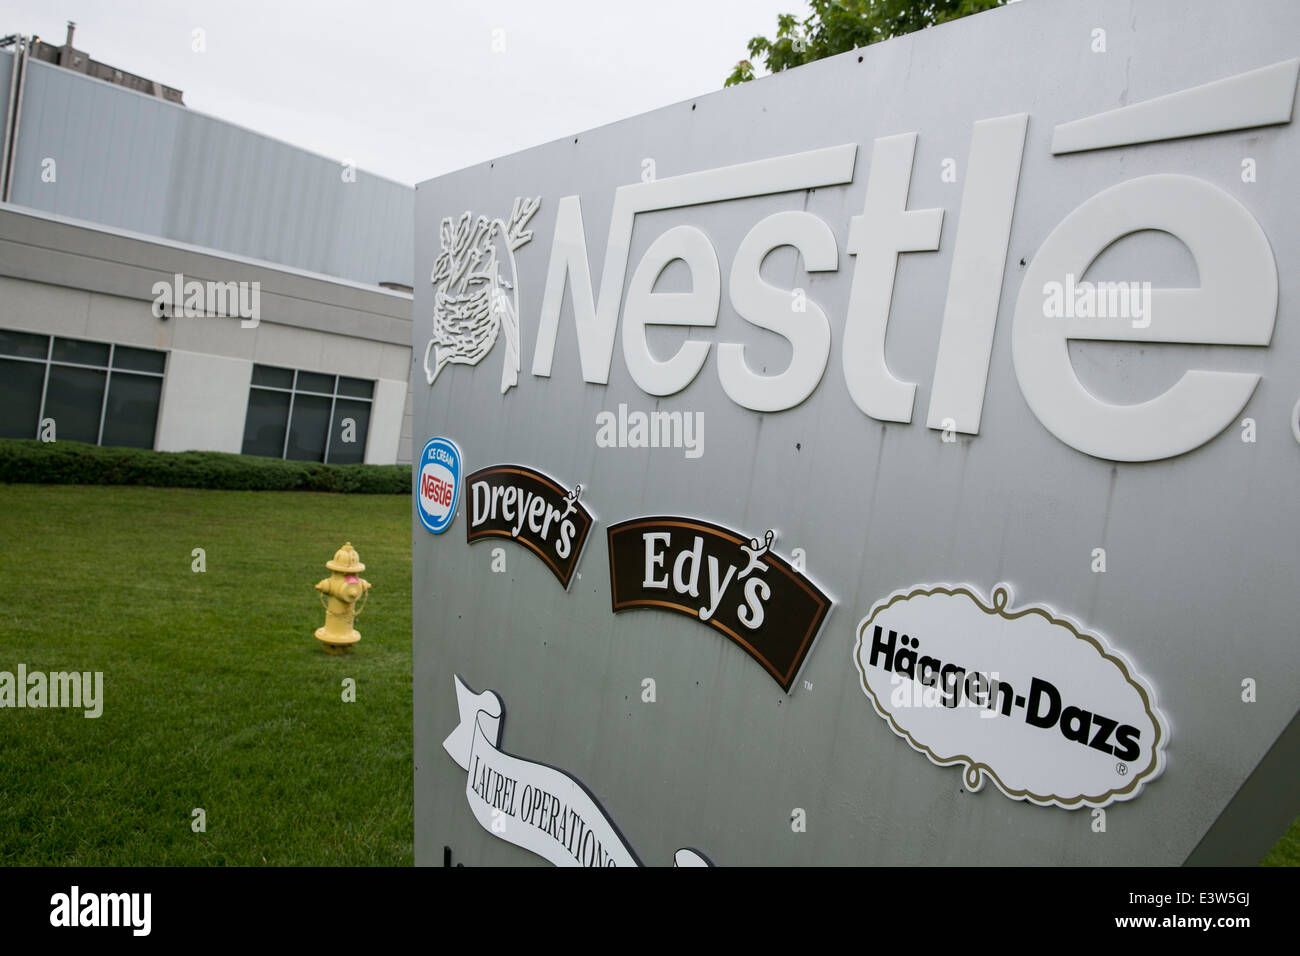 Das Laurel Operations Center von Nestle Nordamerika. In diesem Werk werden Eiscreme-Produkte von Dreyer, Edy's, Haagen-DAZ und Nestle hergestellt. Stockfoto